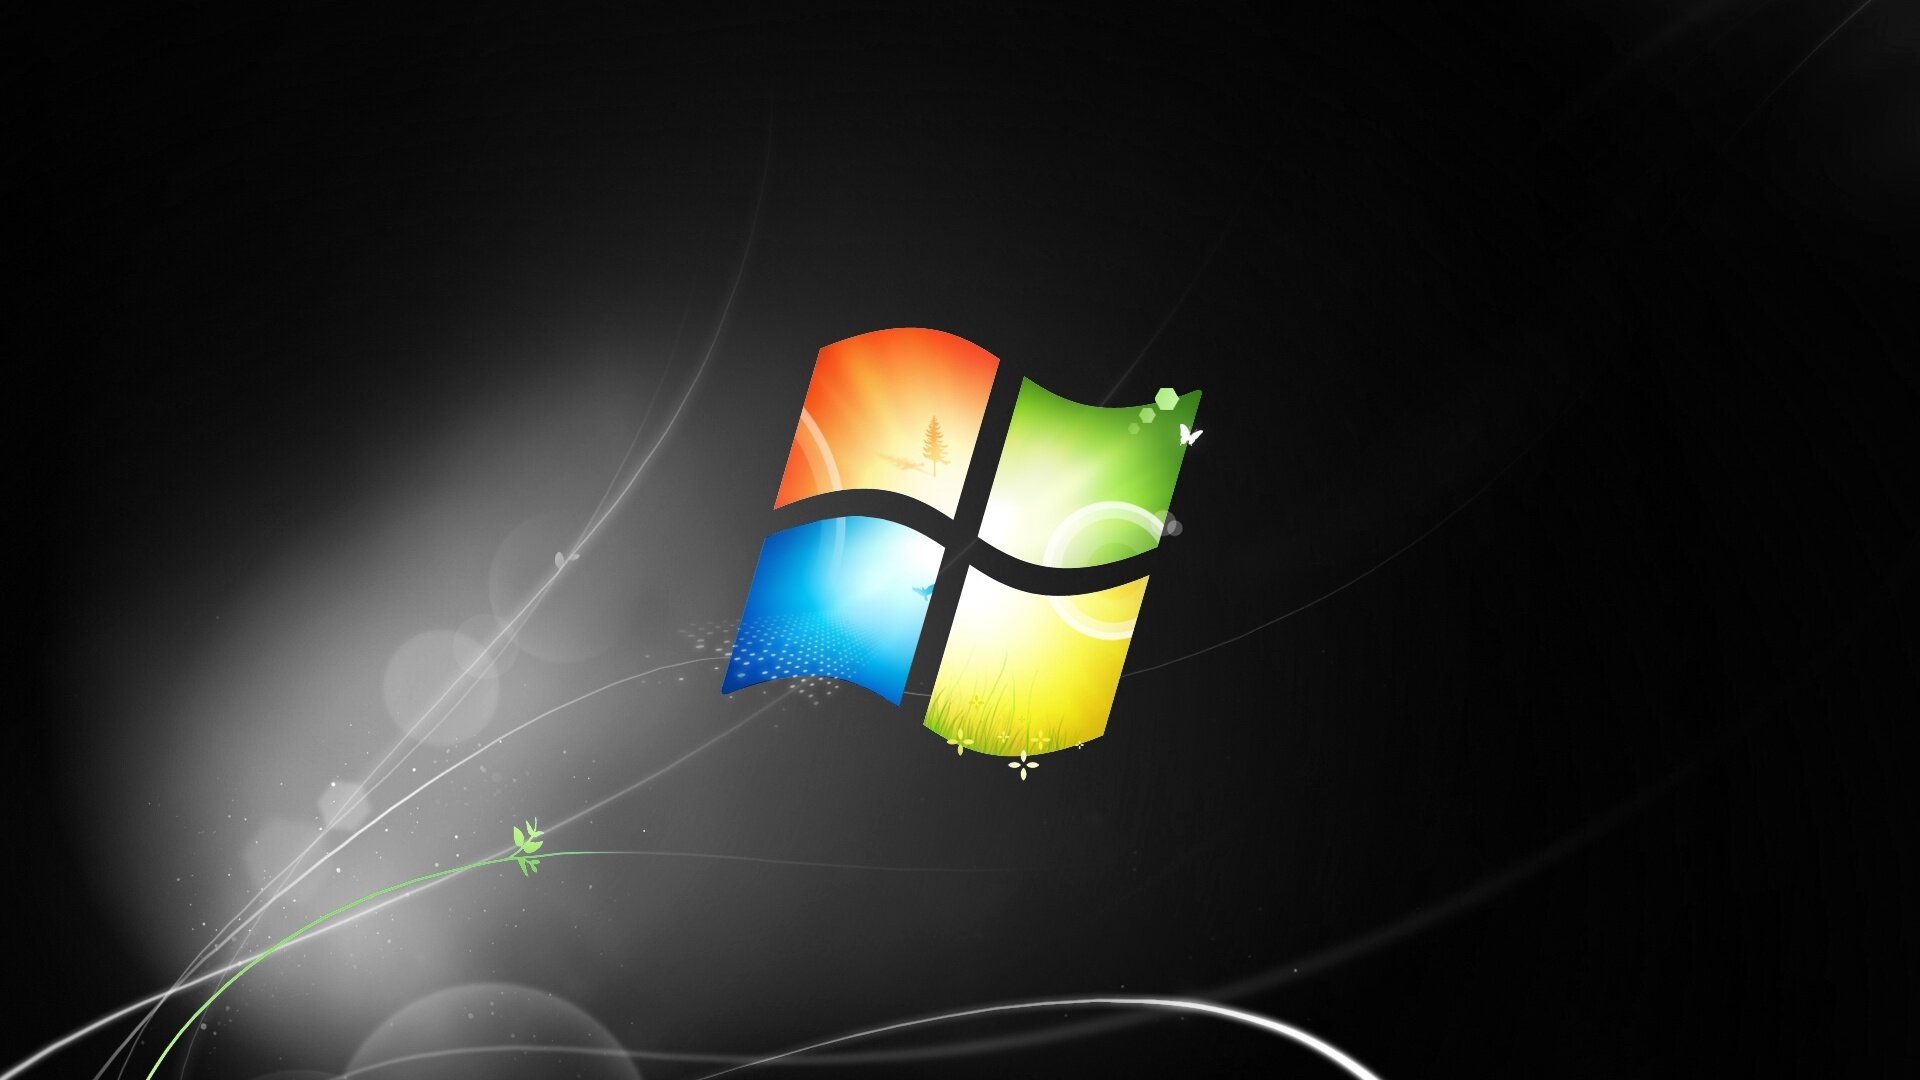 Windows 7 пользоваться нельзя — система теперь полностью мертва. И Windows 8.1 тоже